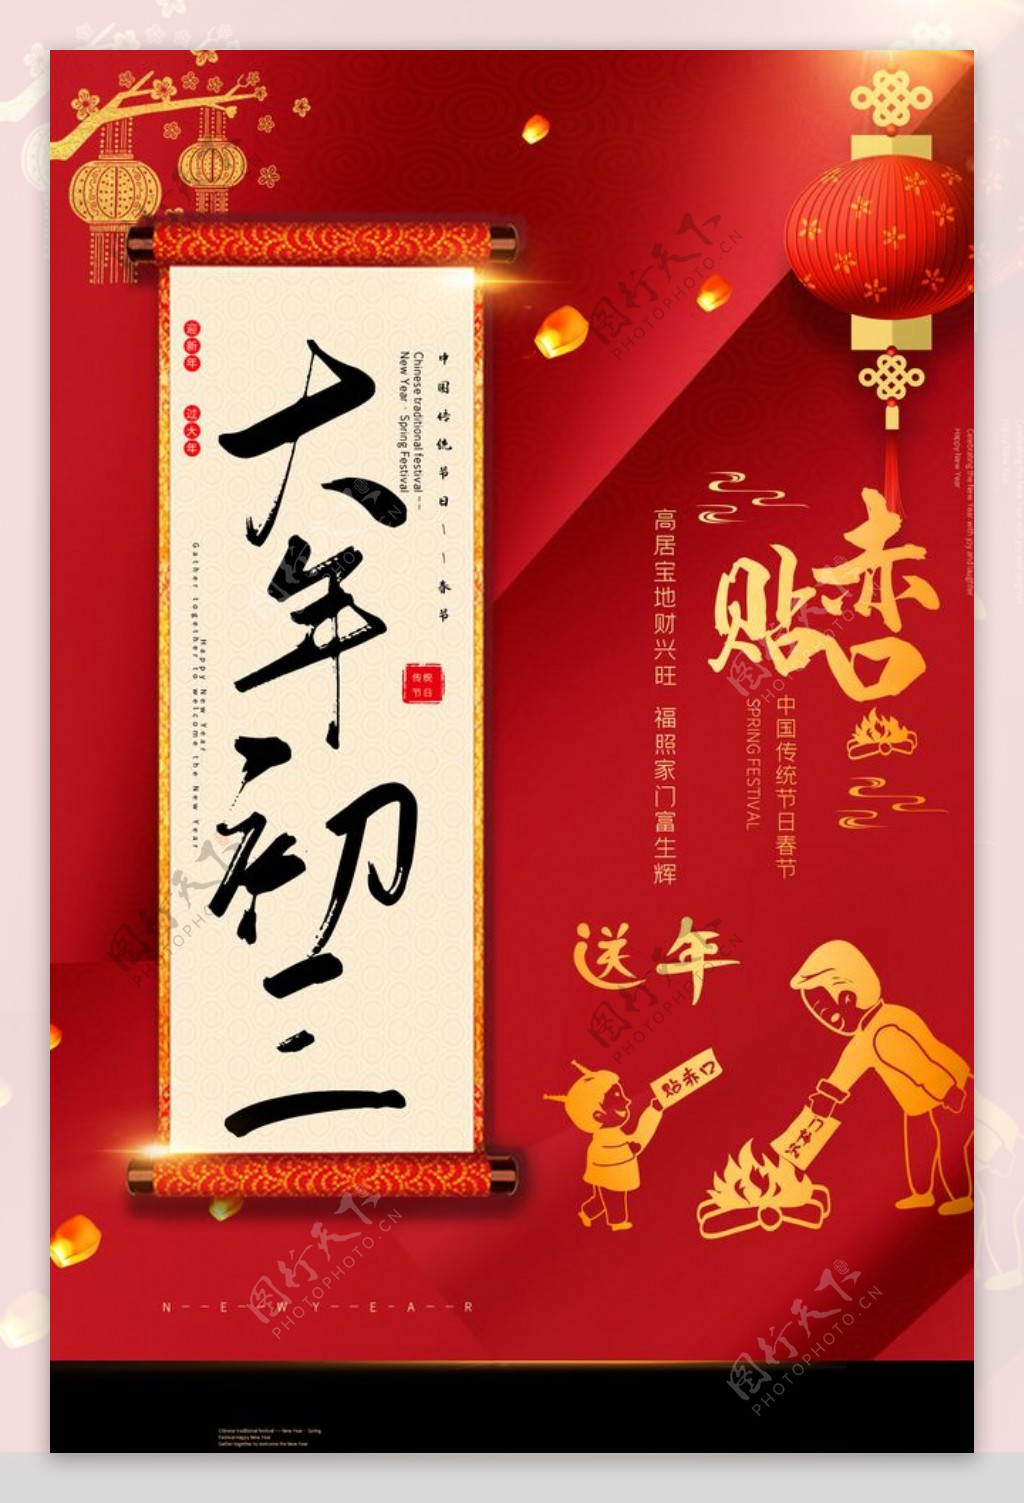 新年活动传统节日宣传海报素材图片